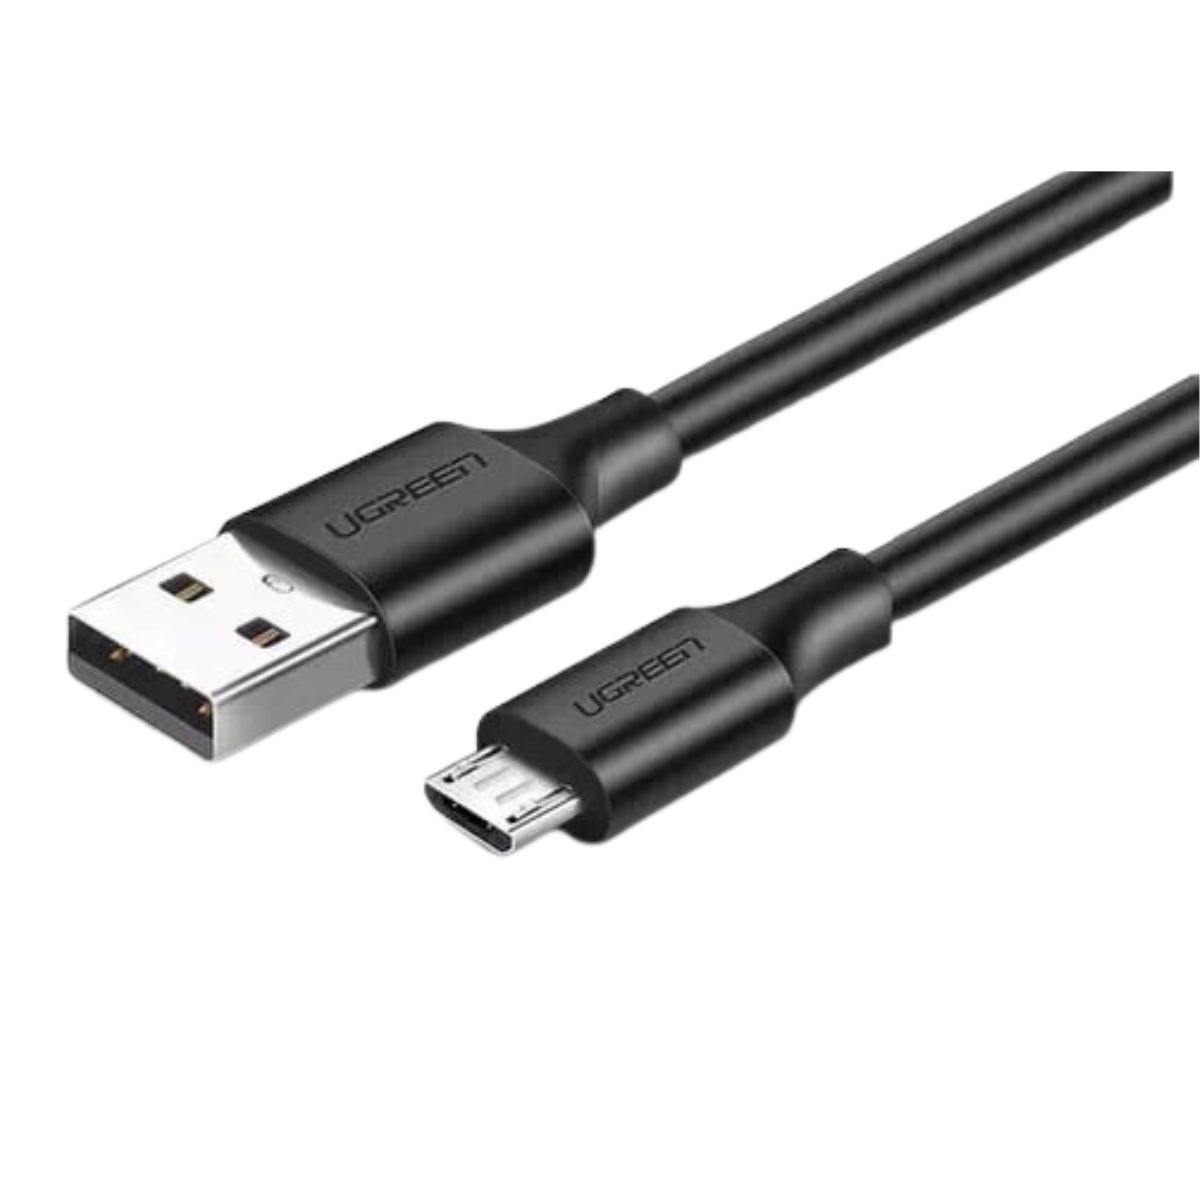 Cáp sạc nhanh Micro USB Ugreen 60137 US289 chiều dài 1.5m, màu đen, mạ niken